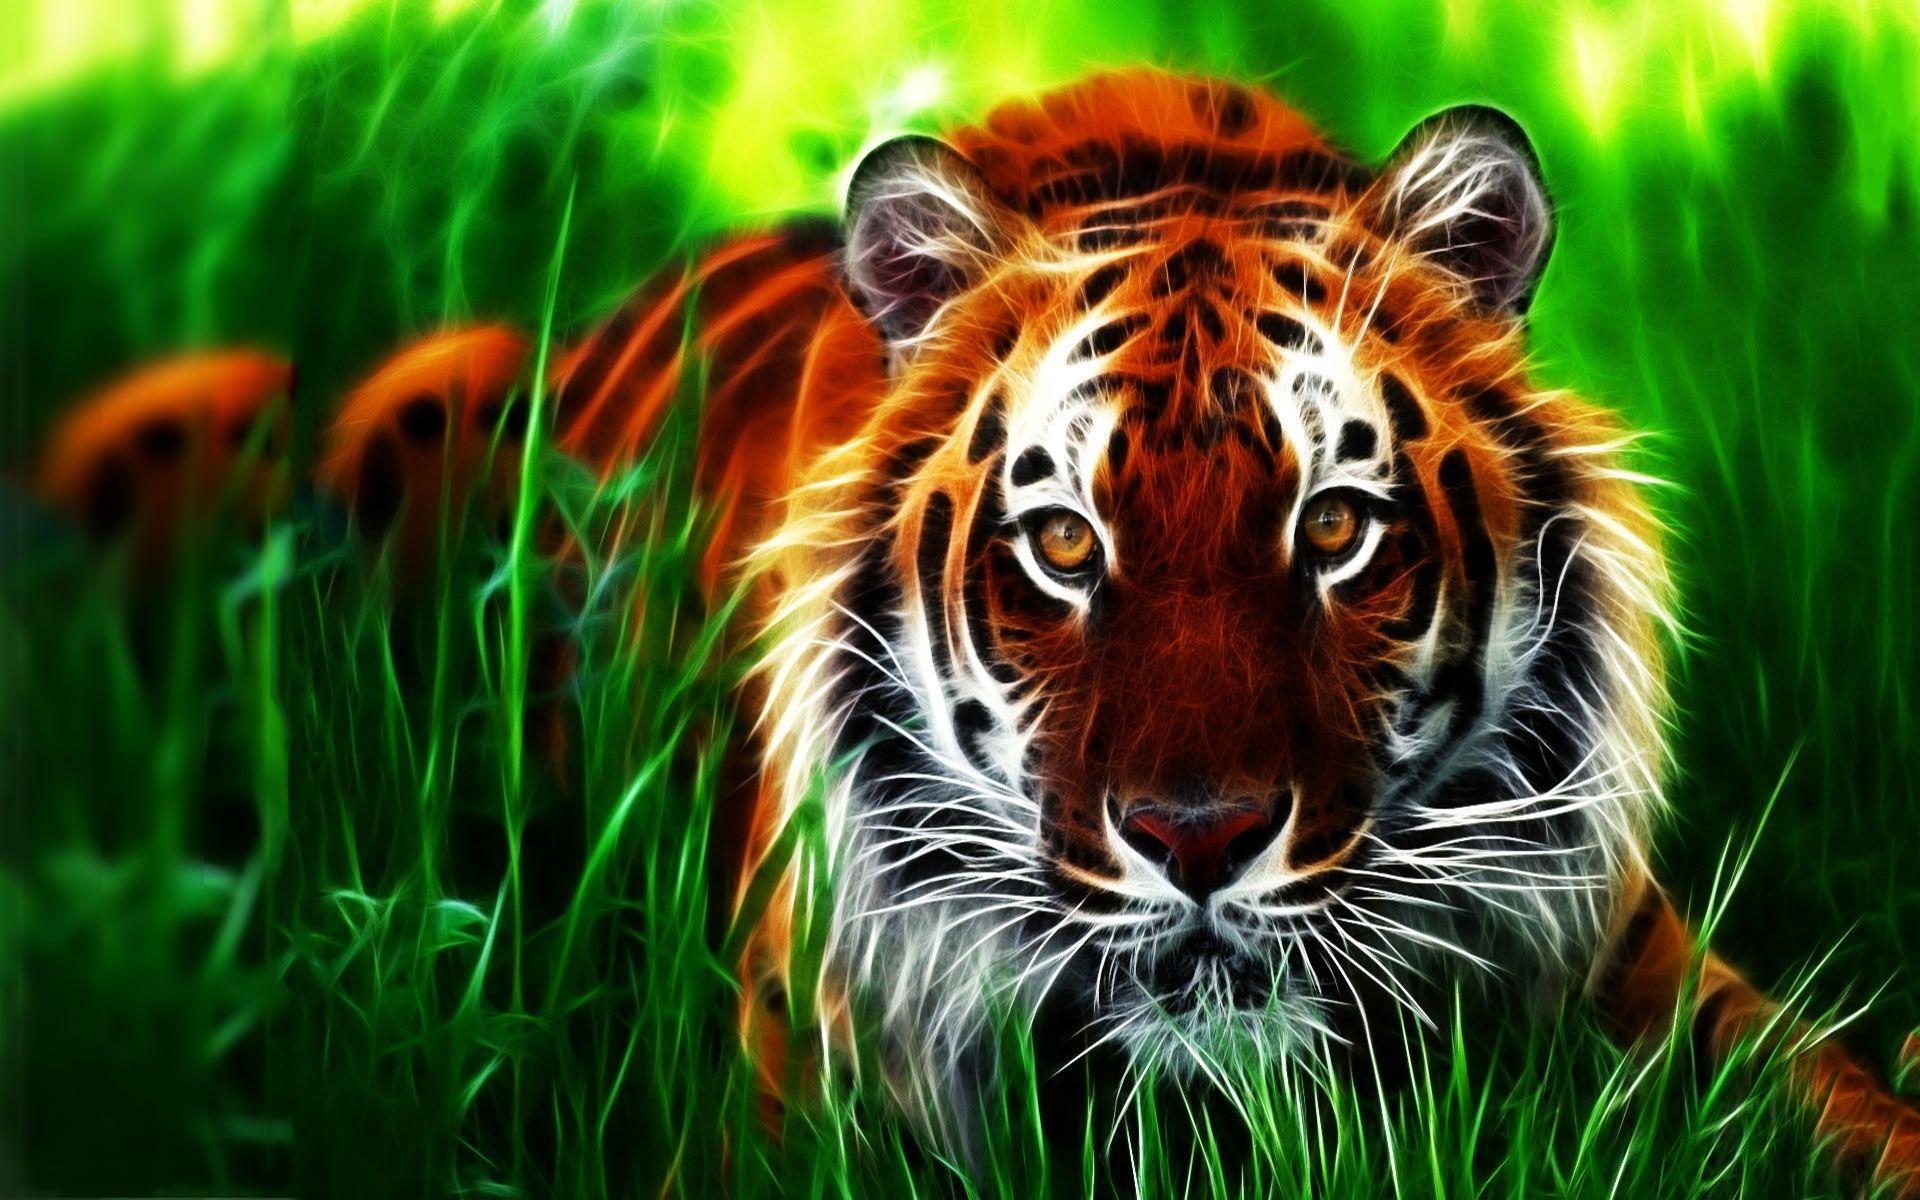 Download 3D tiger Wallpaper download HD 3D tiger Wallpaper download Download Download 3D tiger Wallpaper d. Tiger wallpaper, Tiger picture, Tiger image